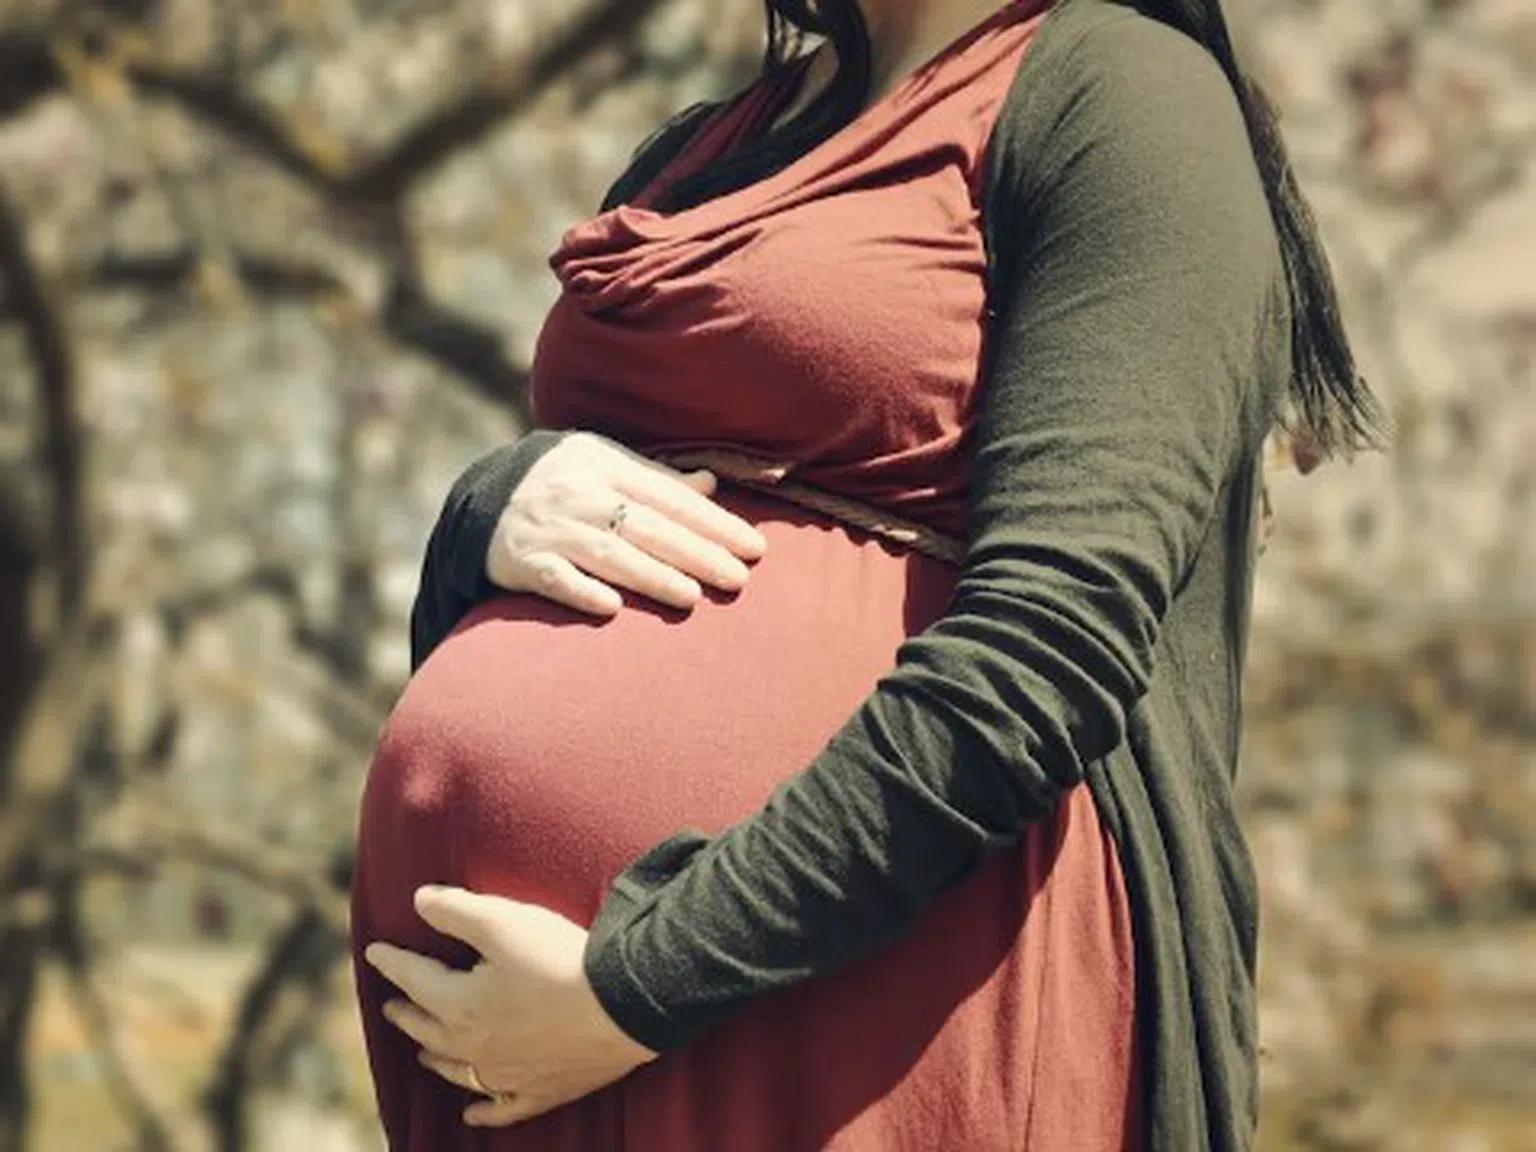 Когато любовницата проговори: Бременна съм, а той ми е изневерявал 4 години